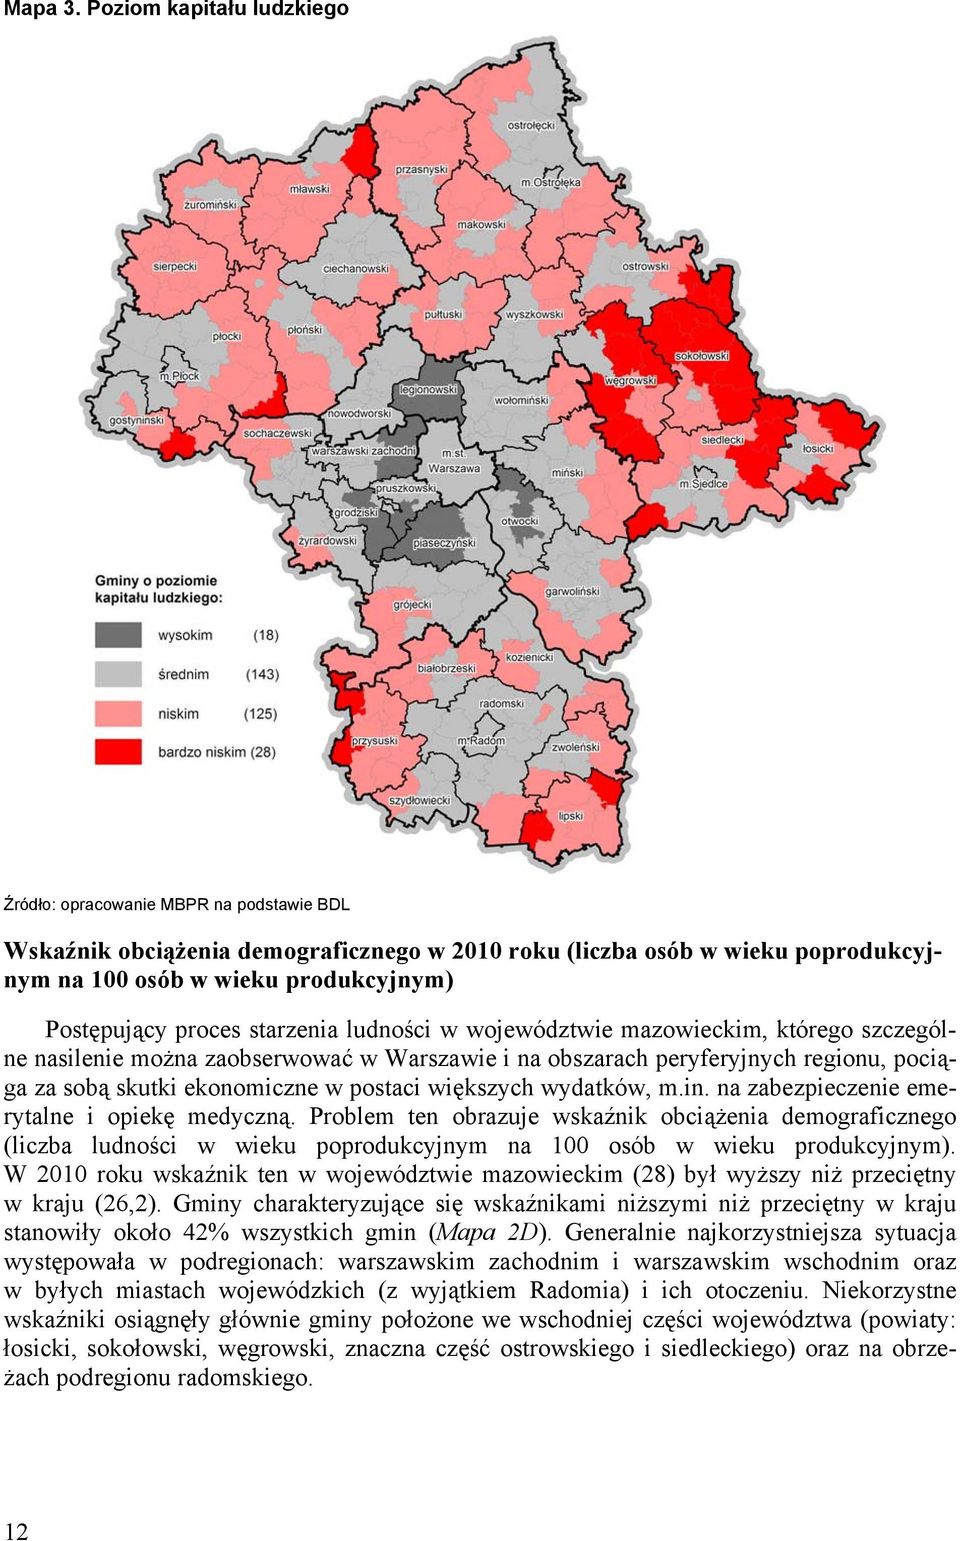 proces starzenia ludności w województwie mazowieckim, którego szczególne nasilenie można zaobserwować w Warszawie i na obszarach peryferyjnych regionu, pociąga za sobą skutki ekonomiczne w postaci